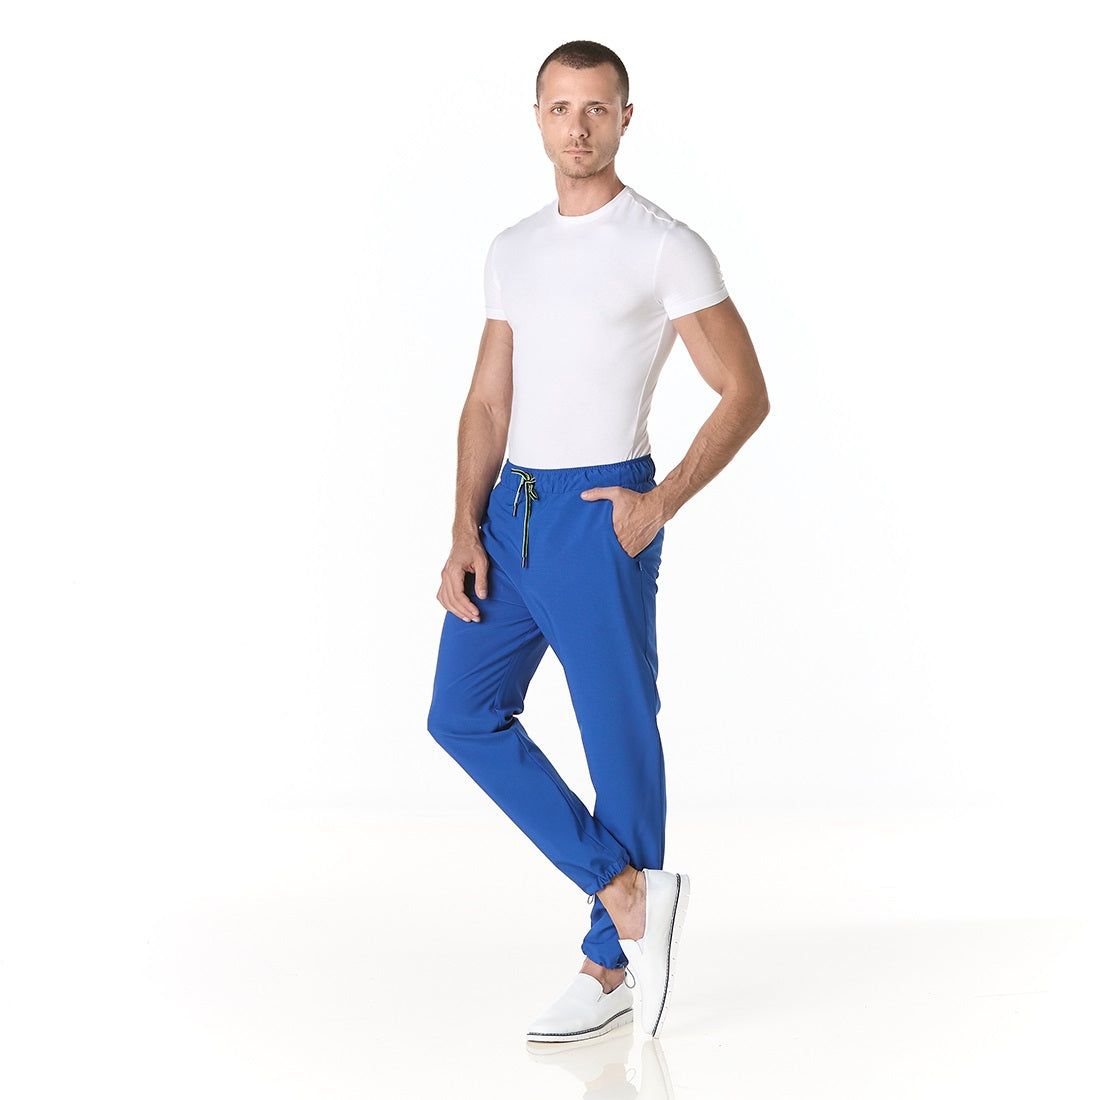 Hombre vistiendo pantalon sanitario azul rey tipo jogger con elastico en la cintura y tobillos